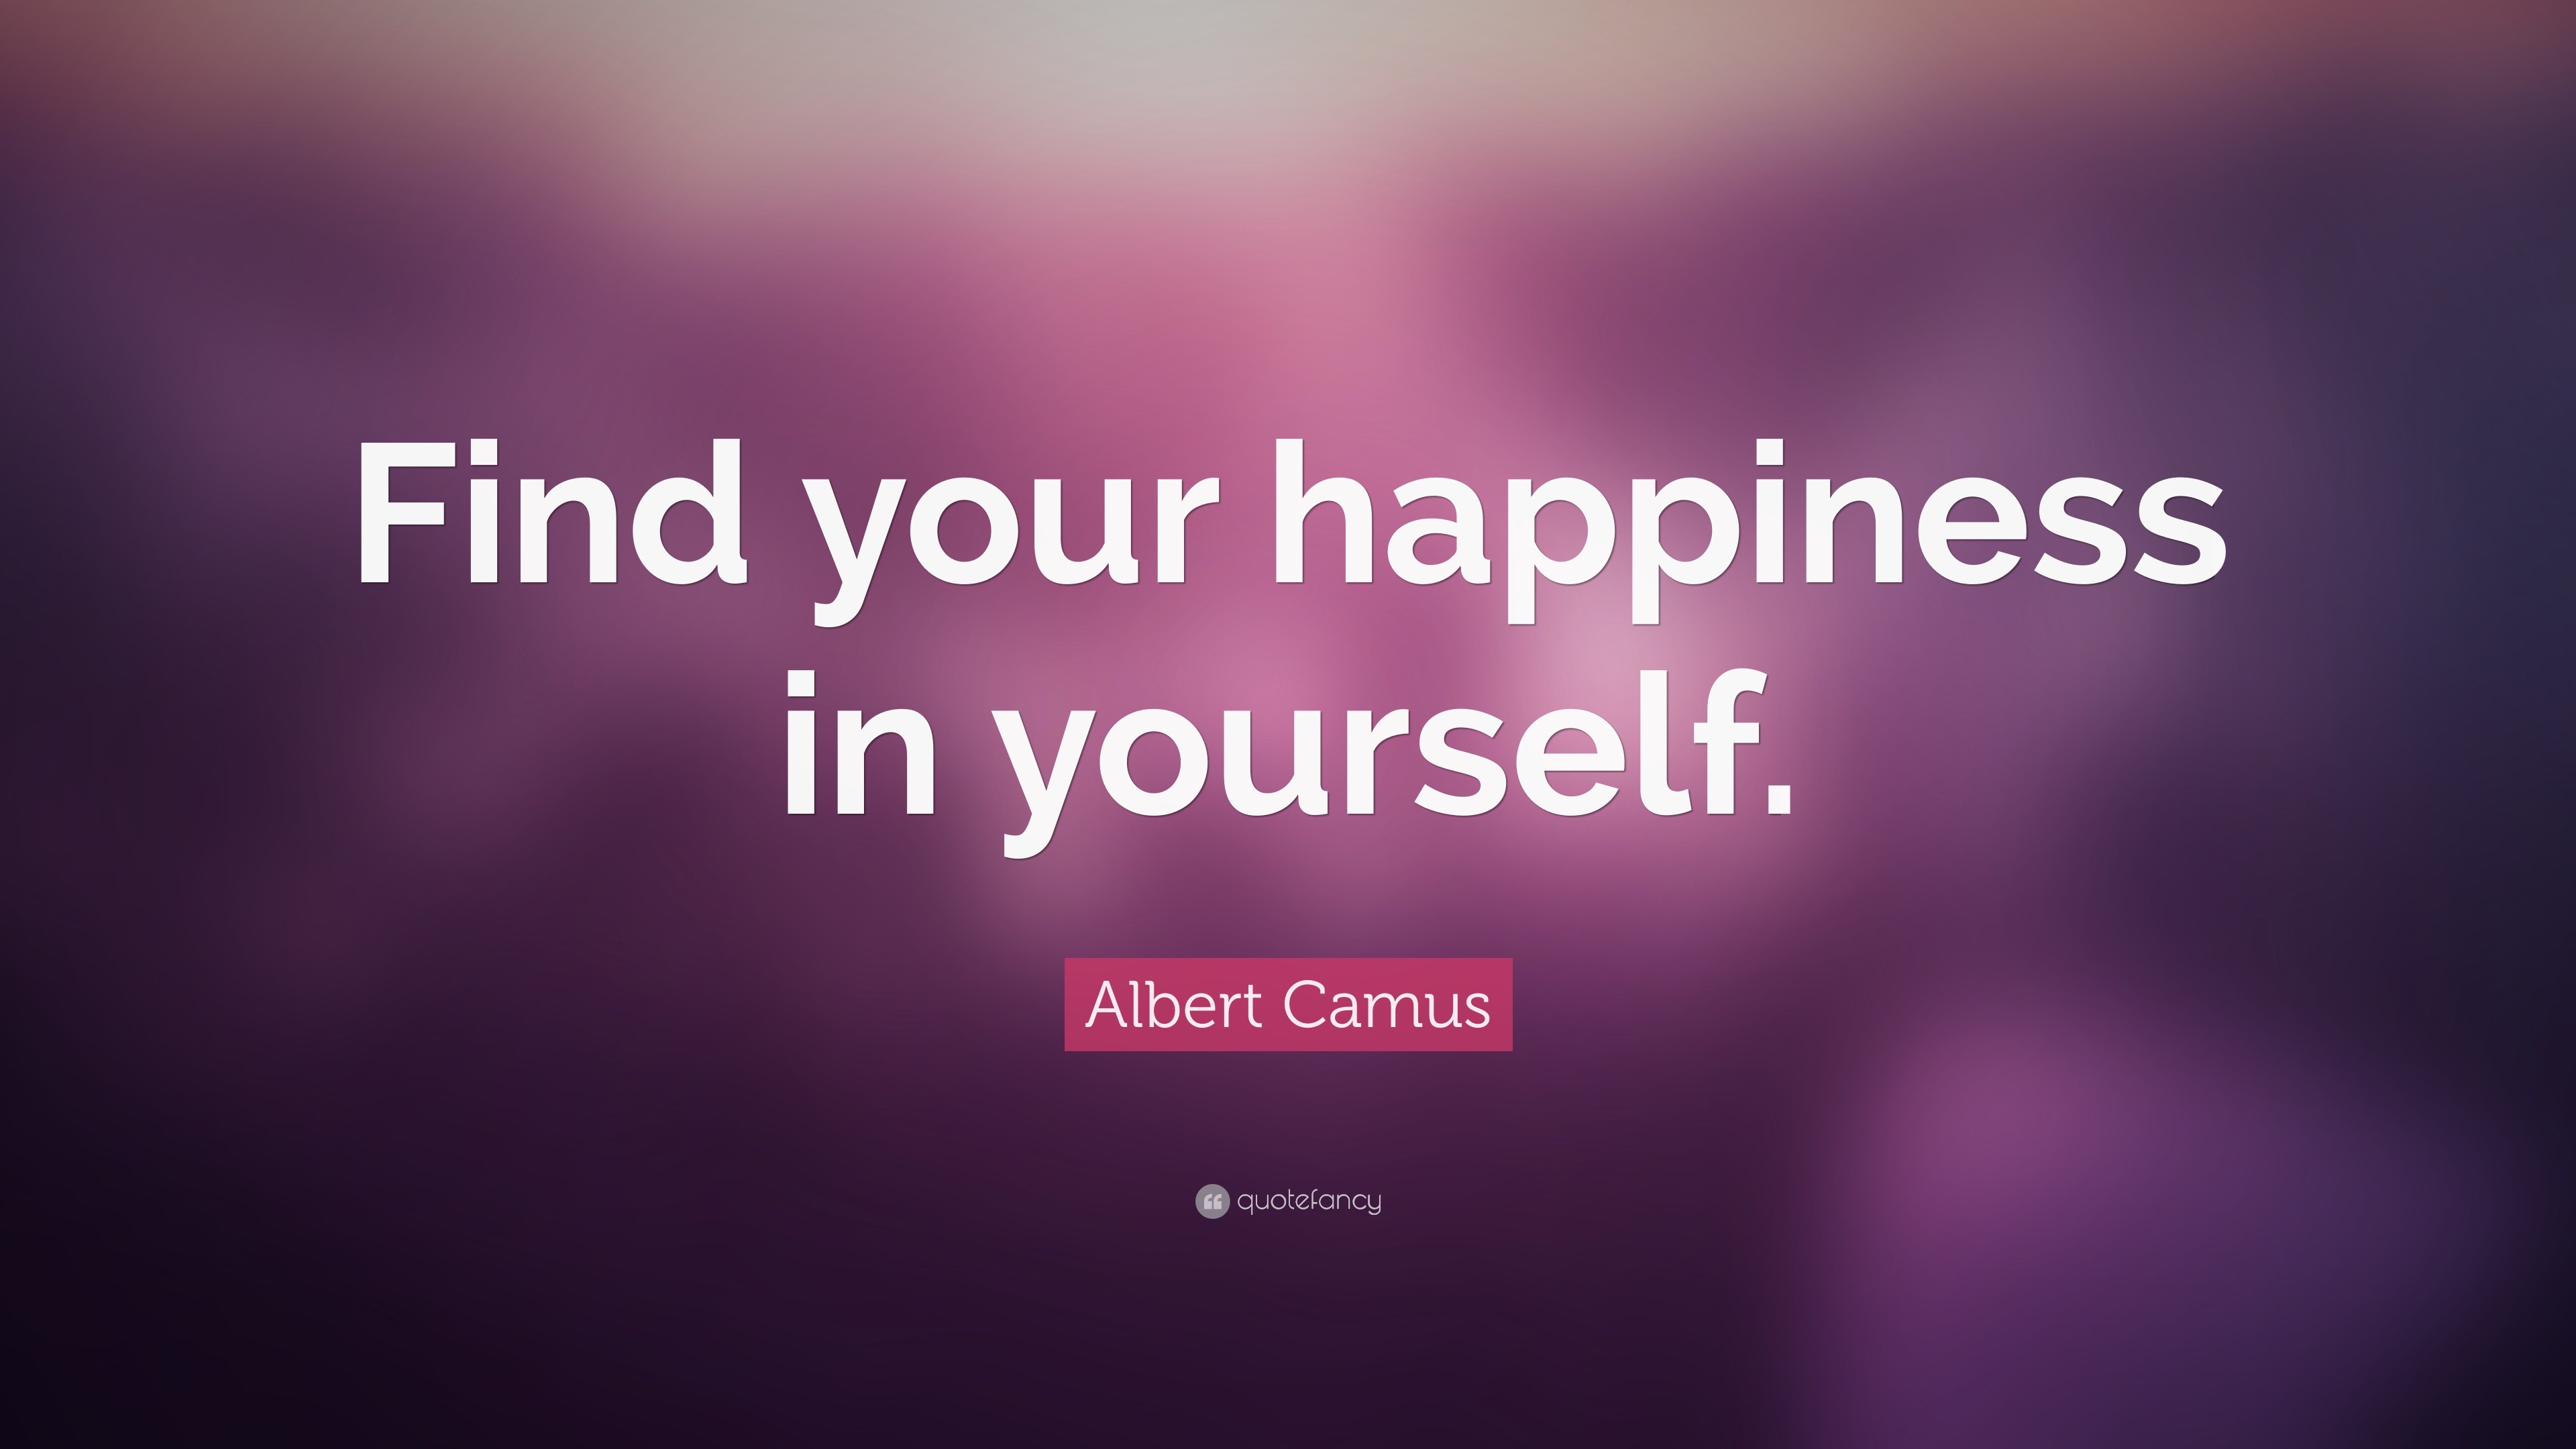 Albert Camus Quotes (100 wallpapers) - Quotefancy